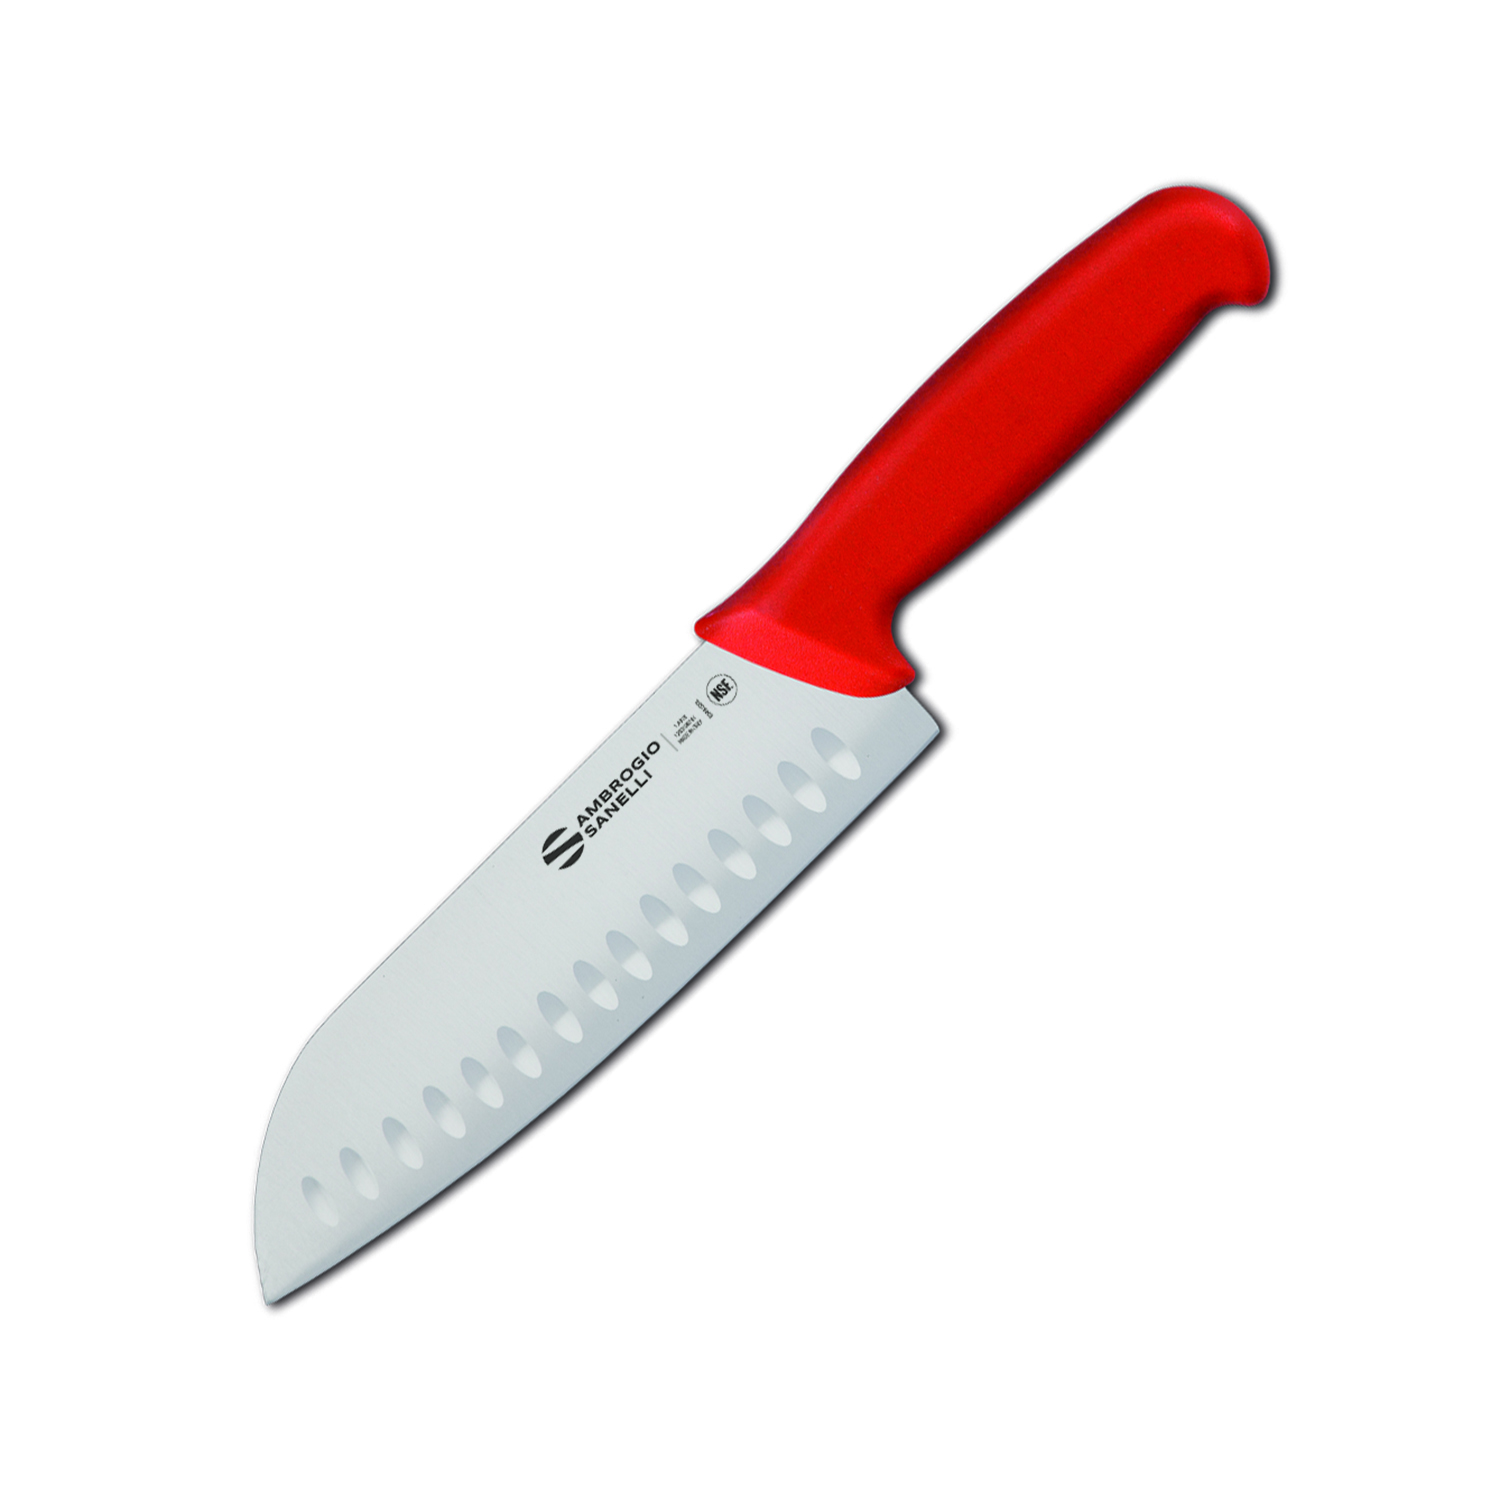 Нож Сантоку Sanelli Ambrogio Supra особое лезвие грантон 18 см Красный (77989)